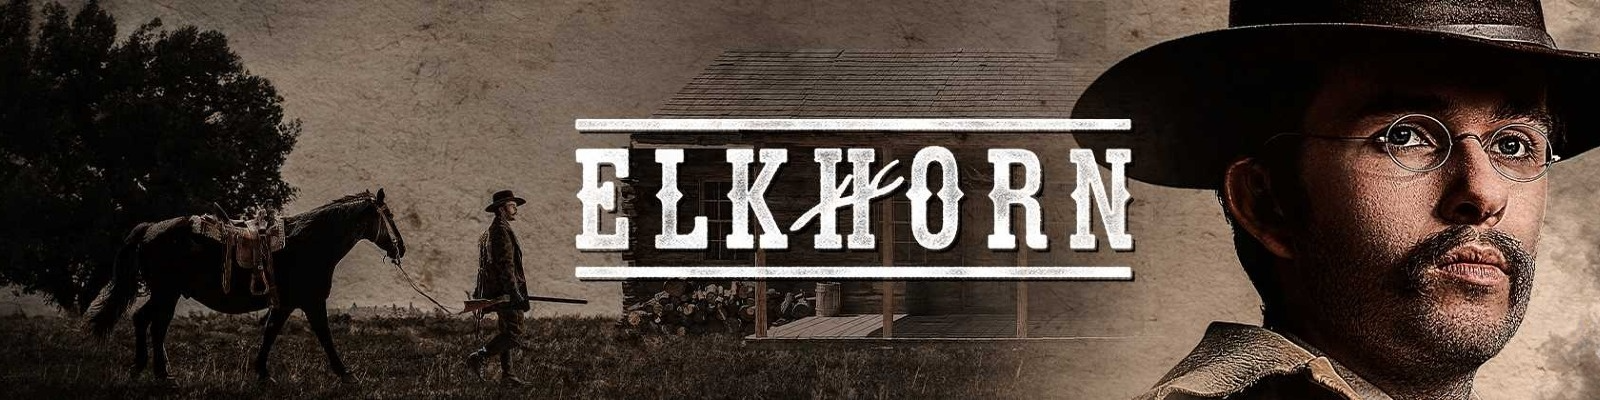 Elkhorn Banner 1